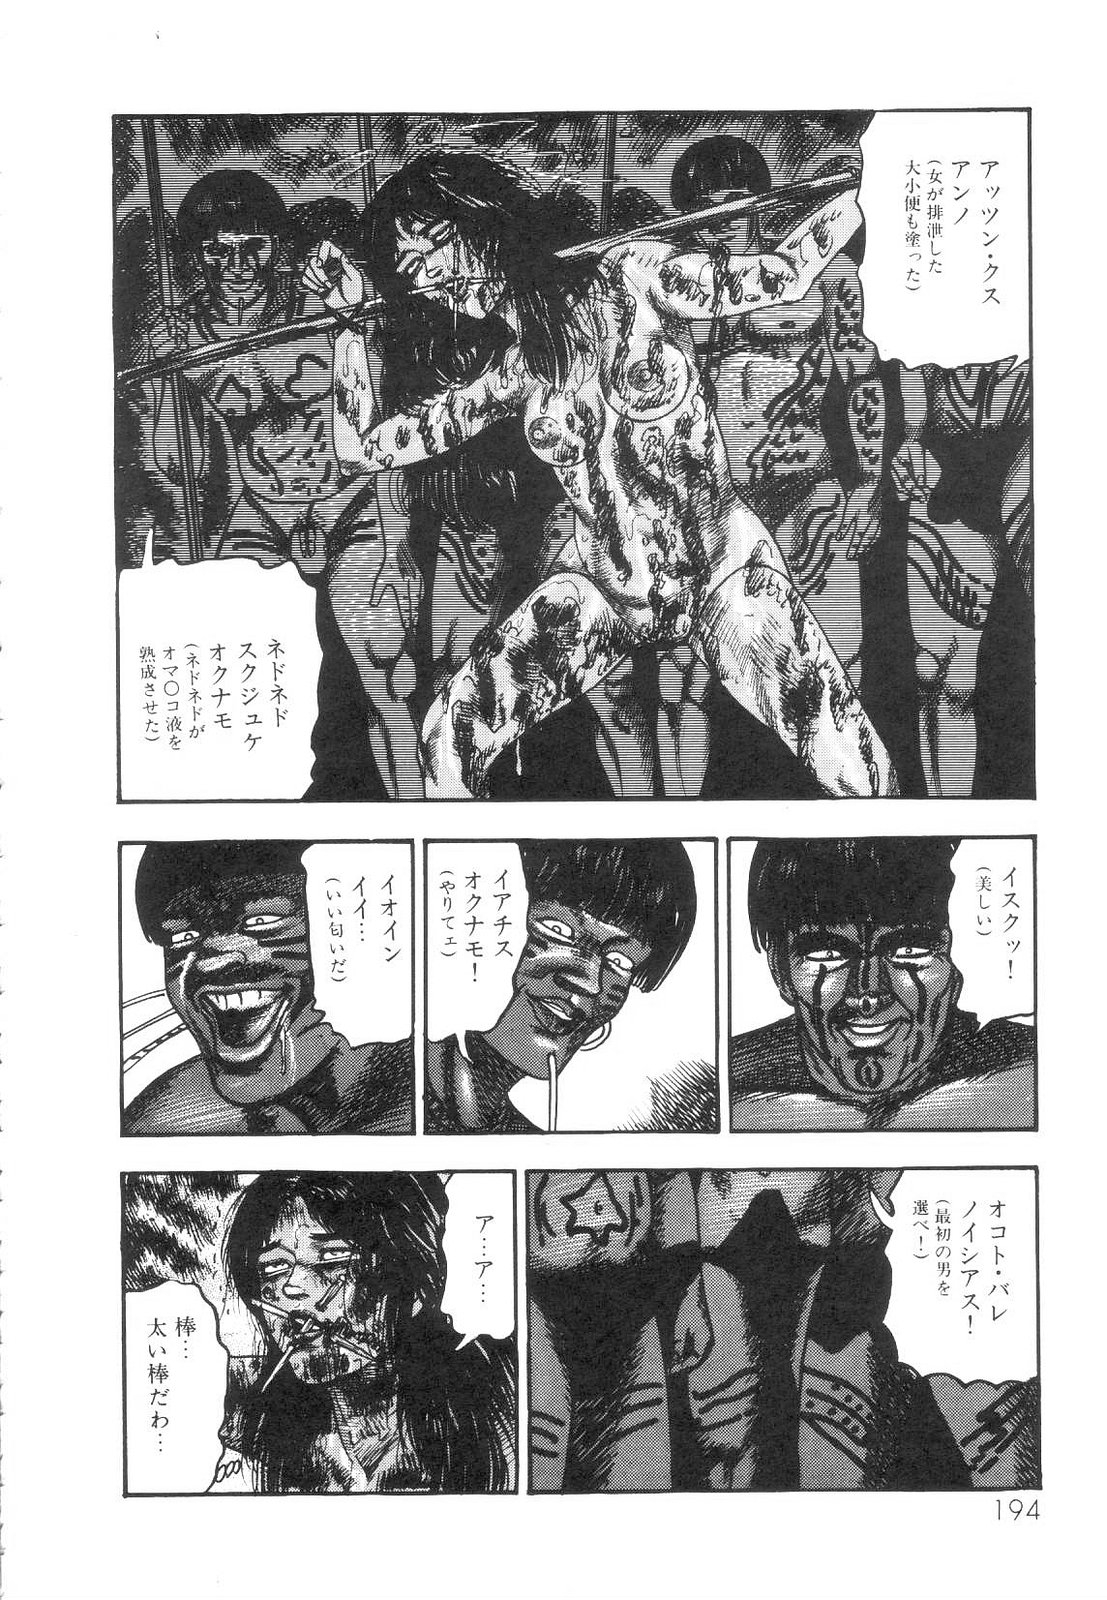 [Sanjou Tomomi] Shiro no Mokushiroku Vol. 1 - Sei Shojo Shion no Shou 194